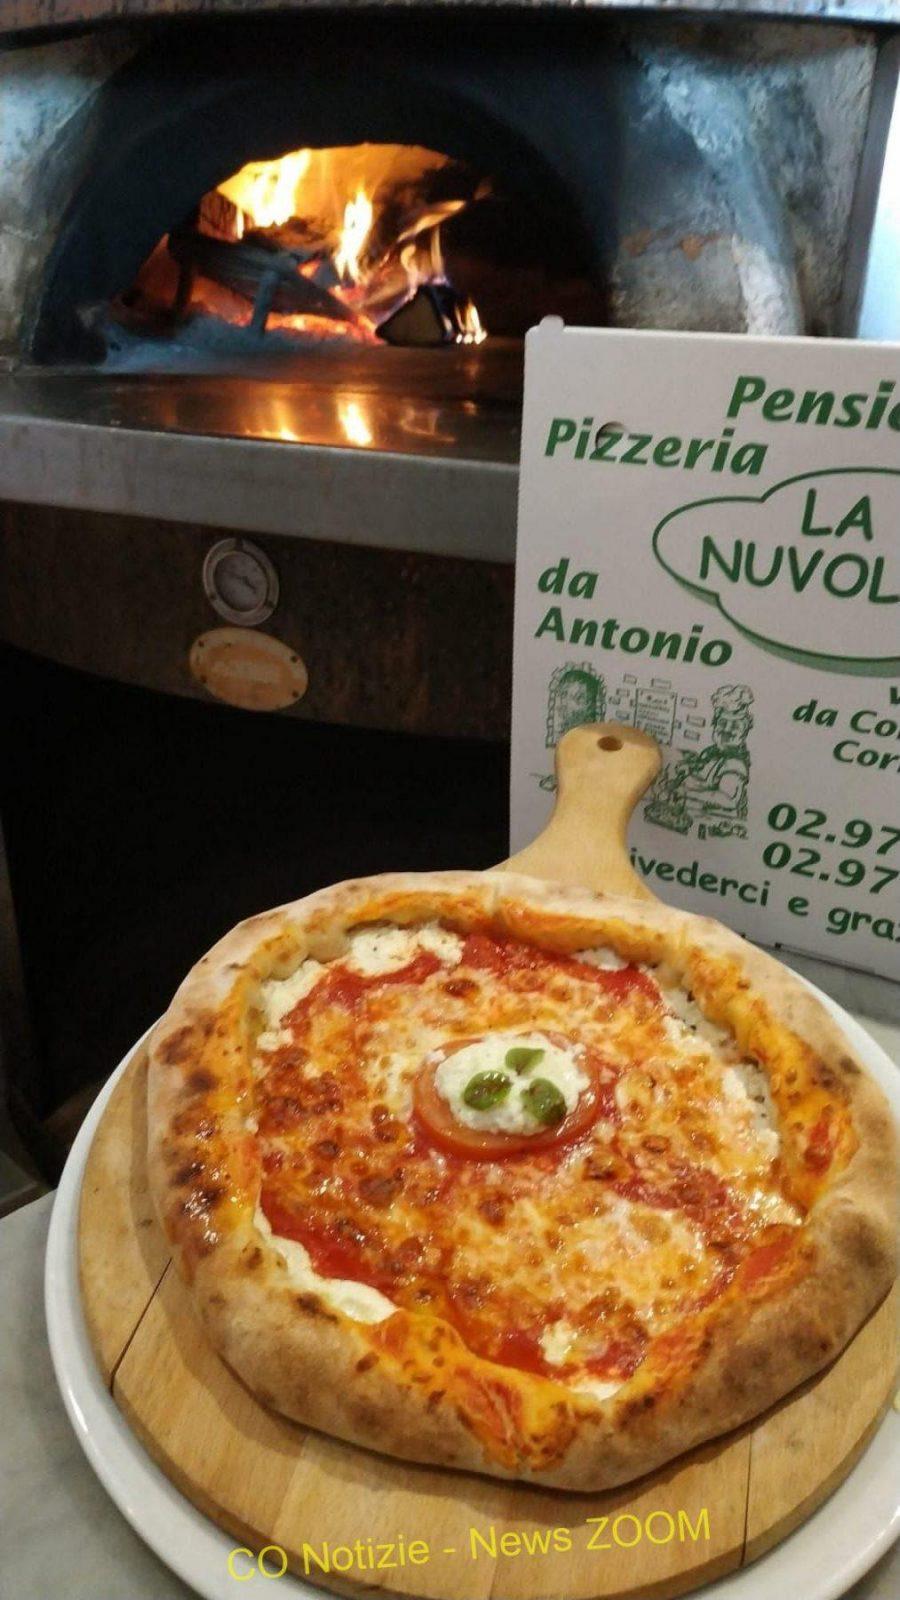 . "La Nuvoletta": dalla locanda alla pizzeria e ristorante pluripremiati. Sapori amalfitani a Corbetta - 02/11/2021